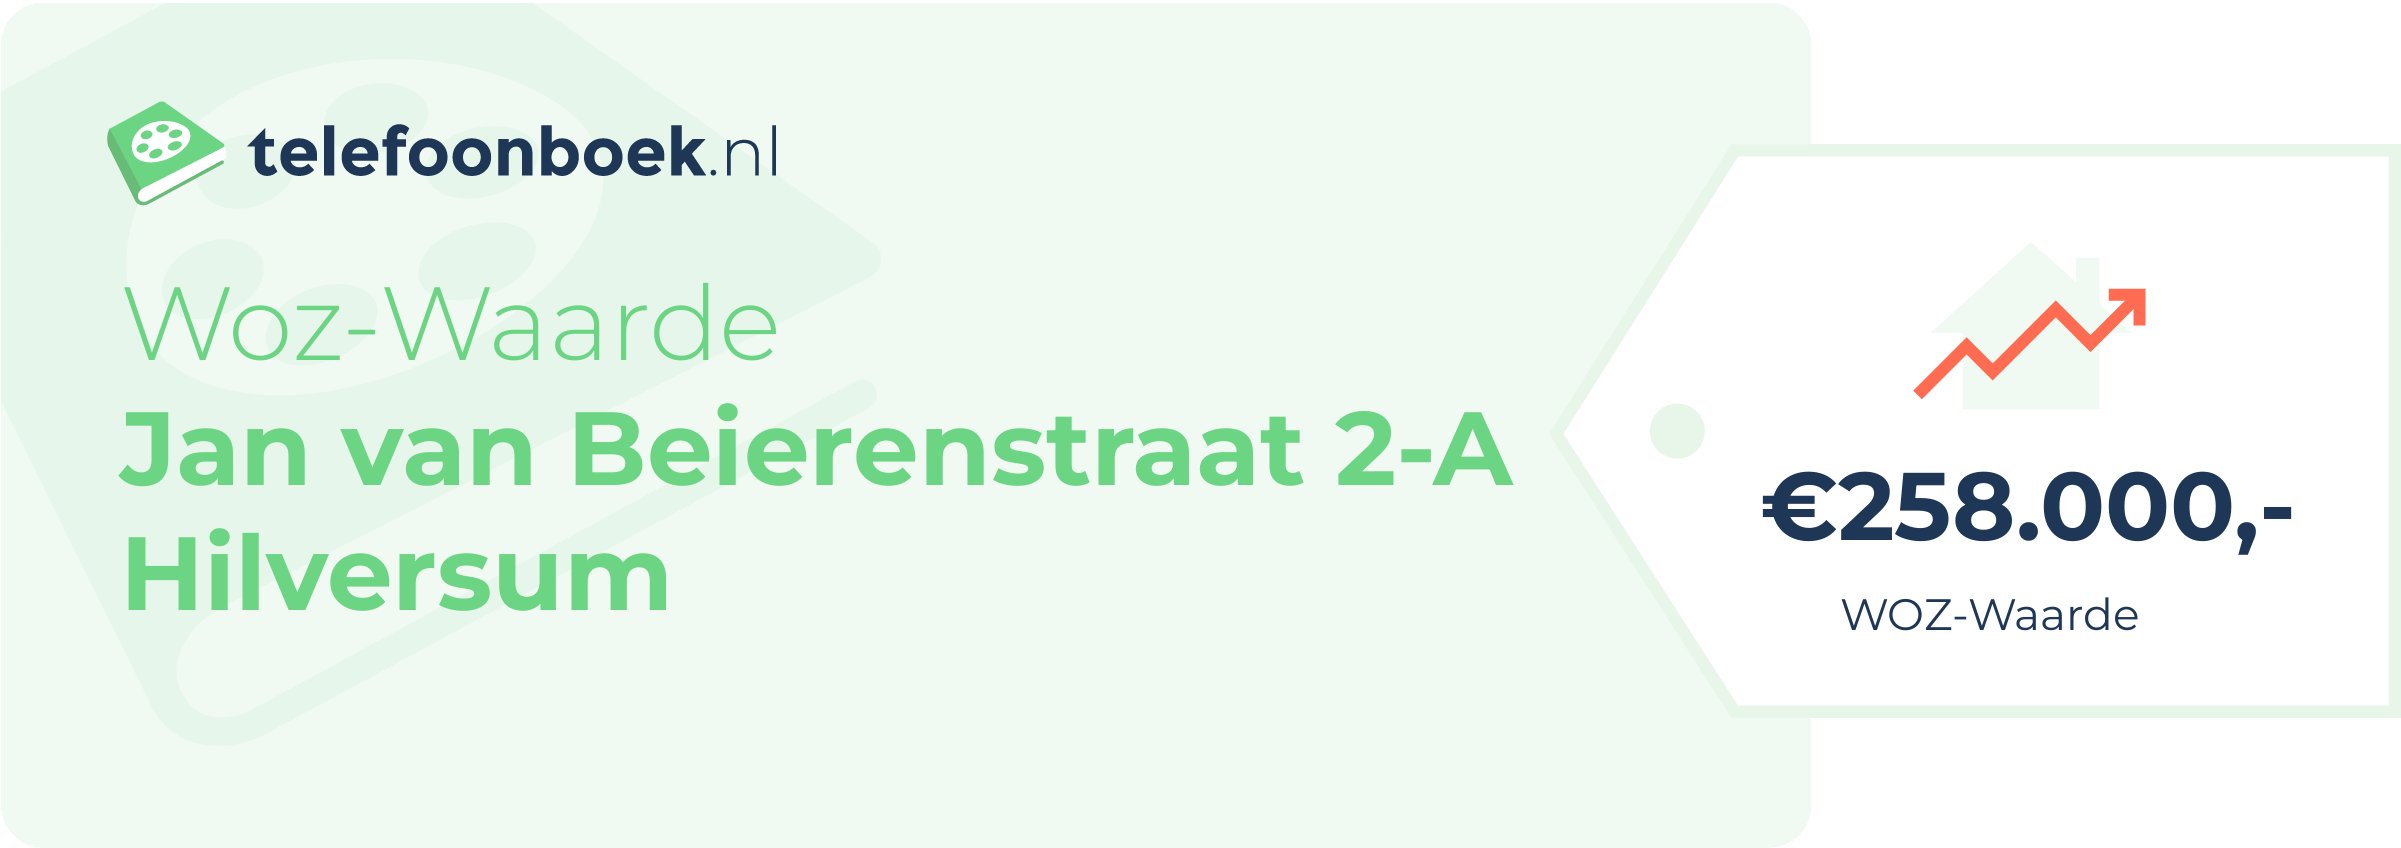 WOZ-waarde Jan Van Beierenstraat 2-A Hilversum